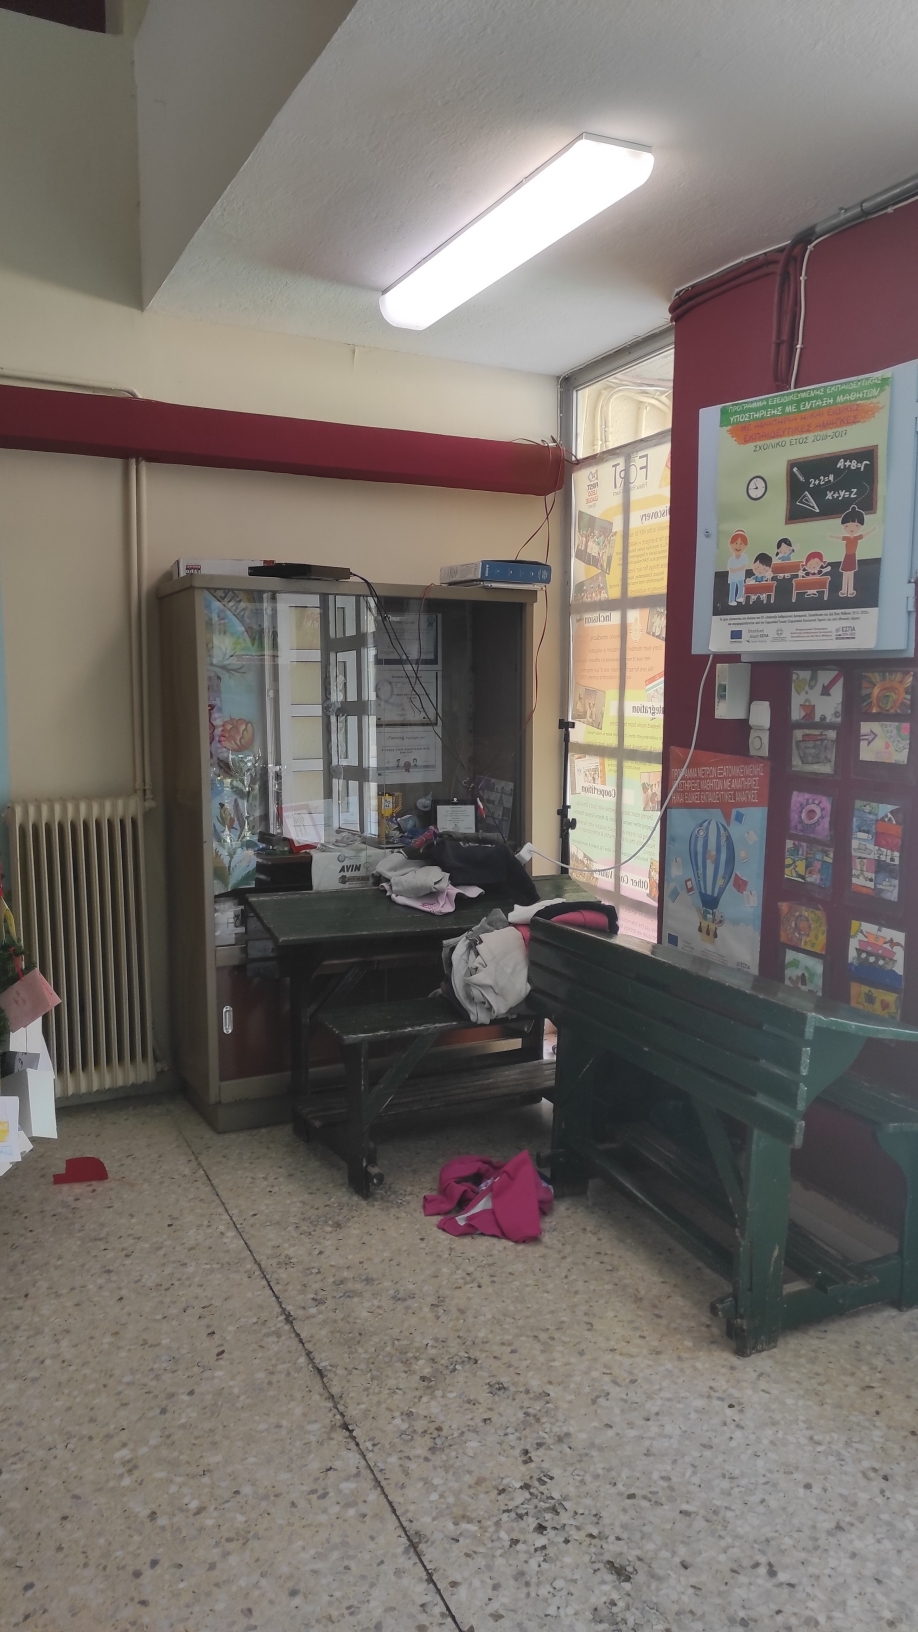 Δήμος Σαρωνικού: Διάρρηξη και βανδαλισμοί στο Δημοτικό Σχολείο Παλαιάς Φώκαιας